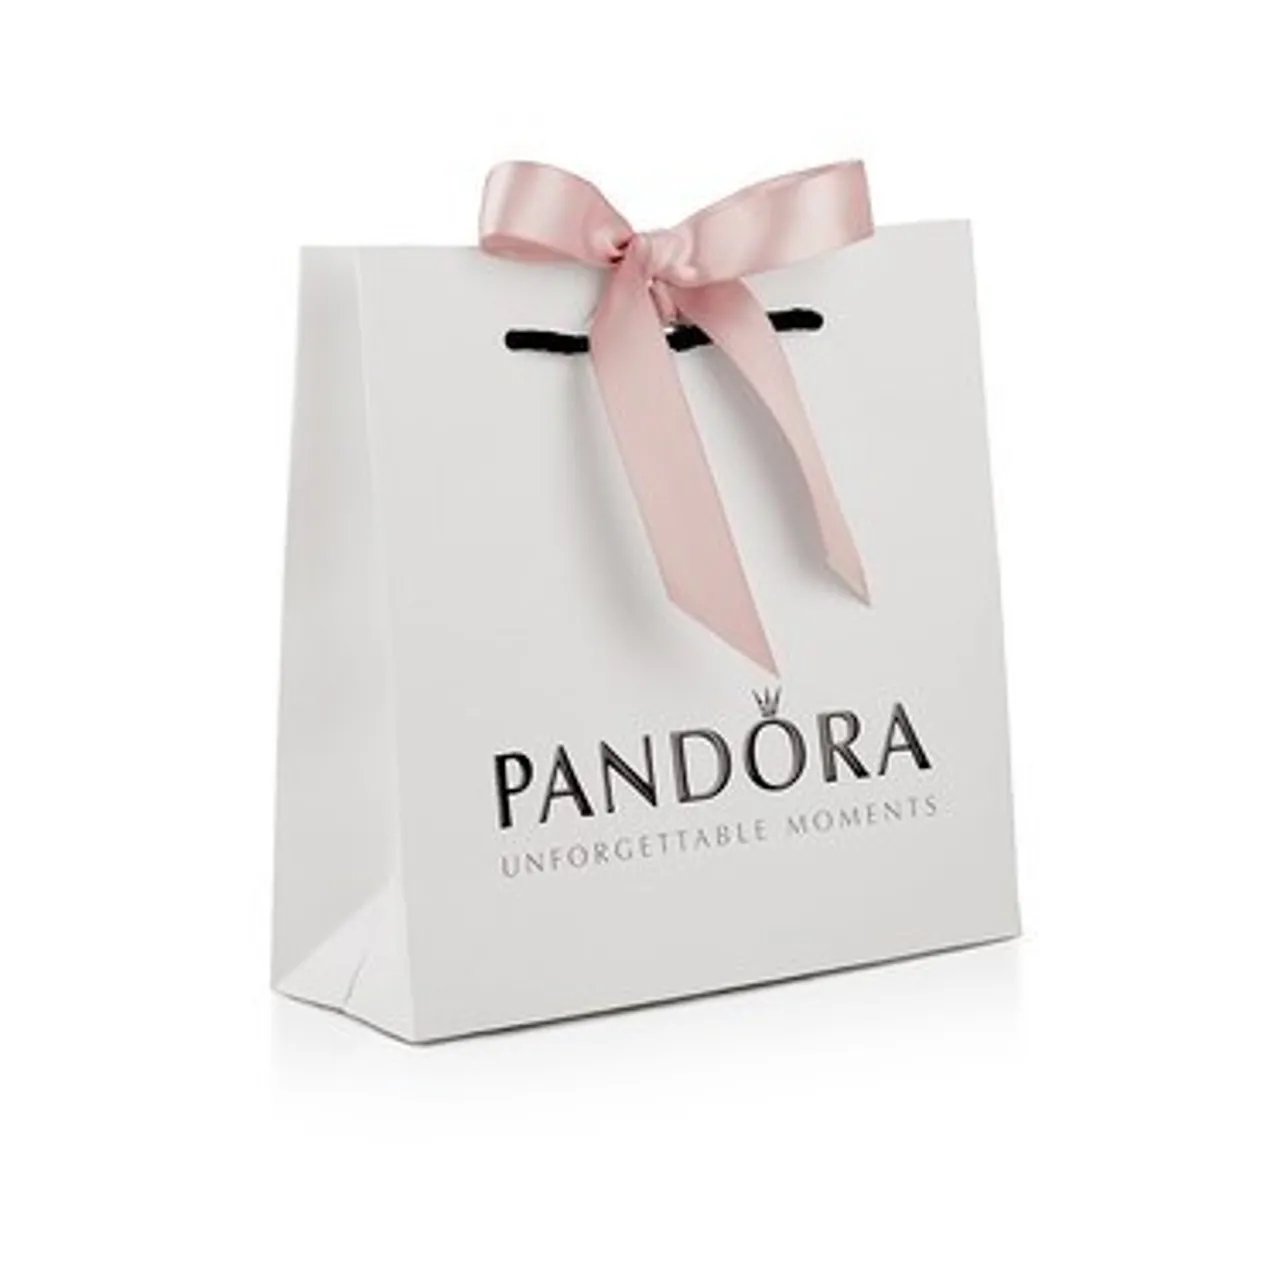 Pandora Hearts of PANDORA Ring - Ring Size 60